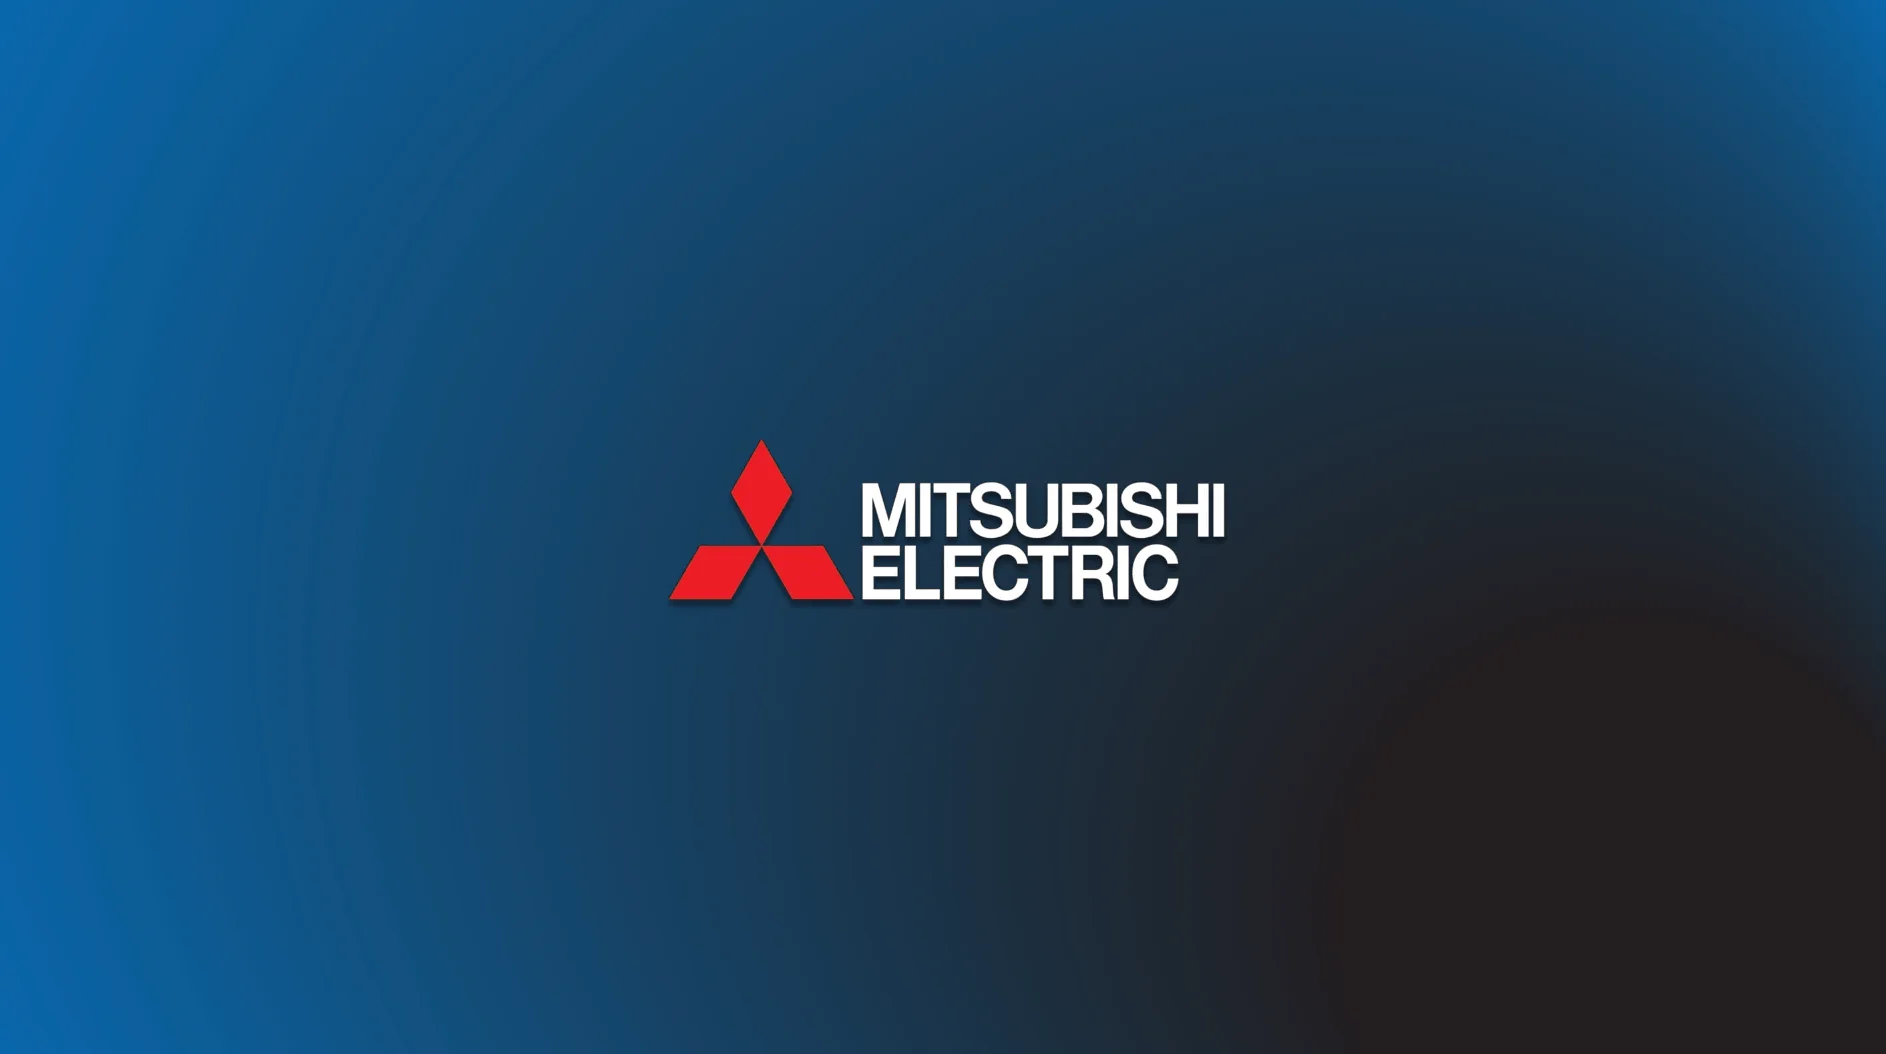 Η Mitsubishi Electric παραποιούσε τις δοκιμές ασφάλειας και διασφάλισης ποιότητας των μετασχηματιστών που πουλούσε για δεκαετίες